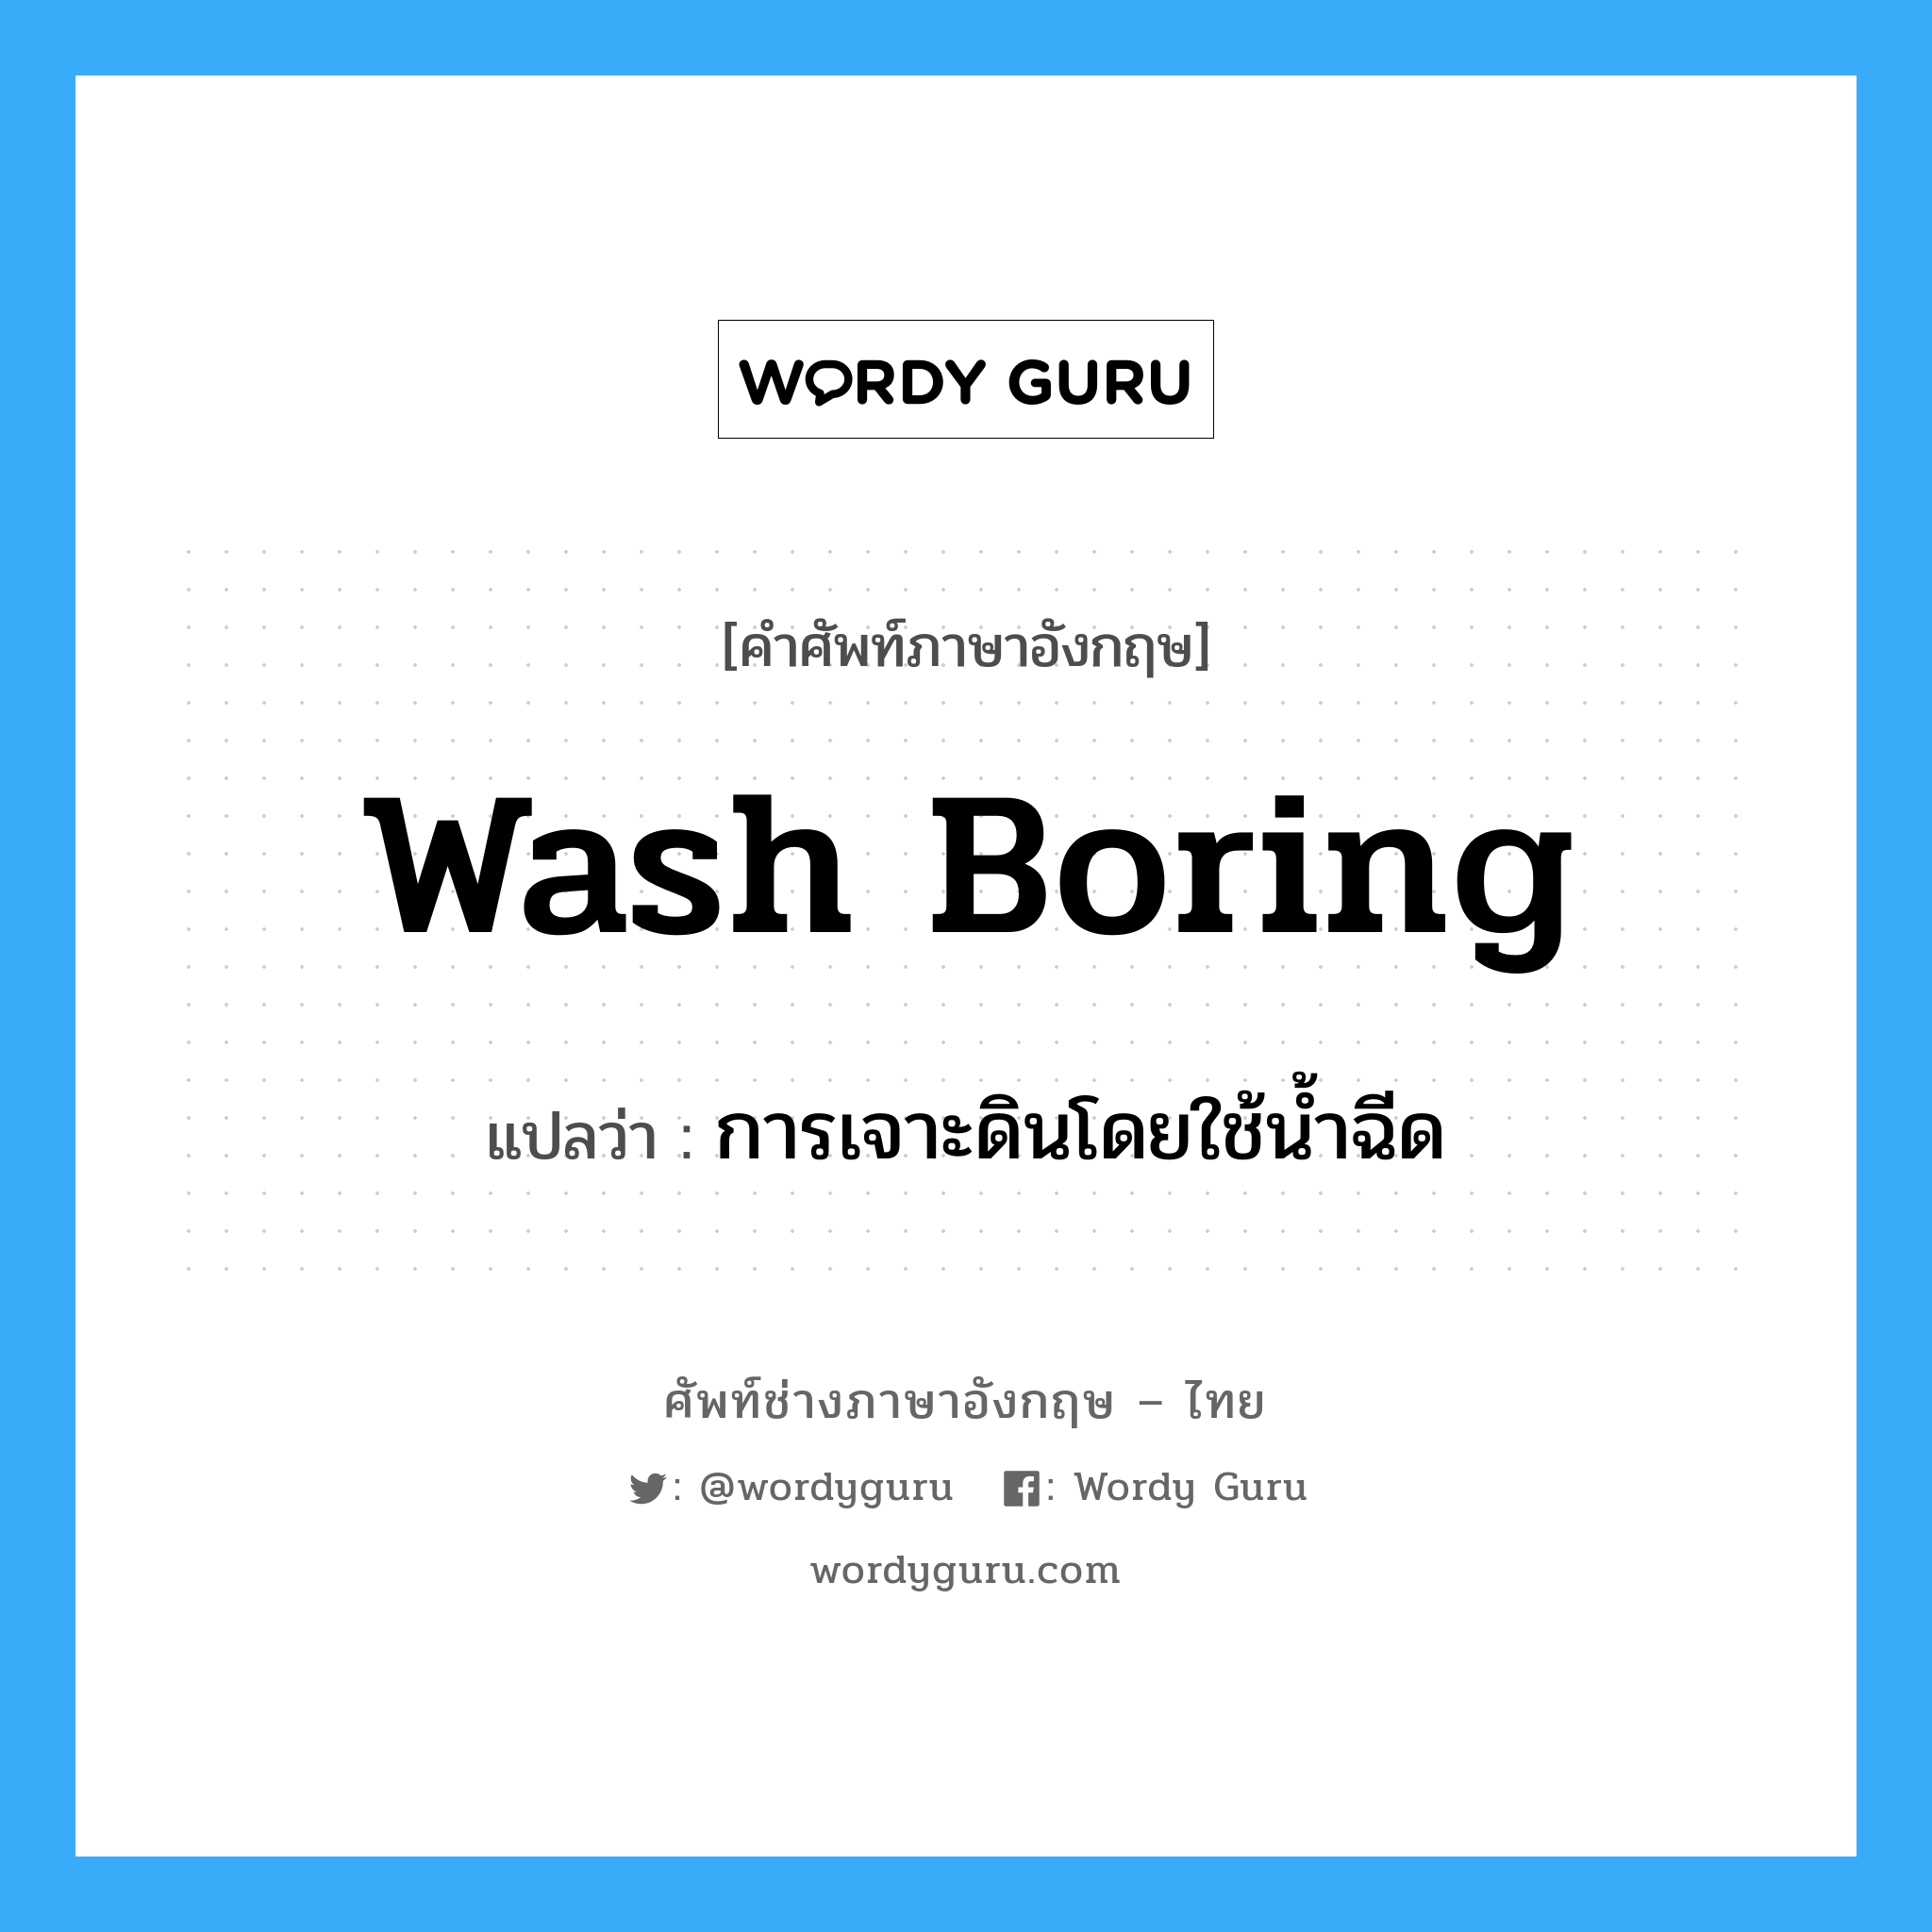 การเจาะดินโดยใช้น้ำฉีด ภาษาอังกฤษ?, คำศัพท์ช่างภาษาอังกฤษ - ไทย การเจาะดินโดยใช้น้ำฉีด คำศัพท์ภาษาอังกฤษ การเจาะดินโดยใช้น้ำฉีด แปลว่า wash boring